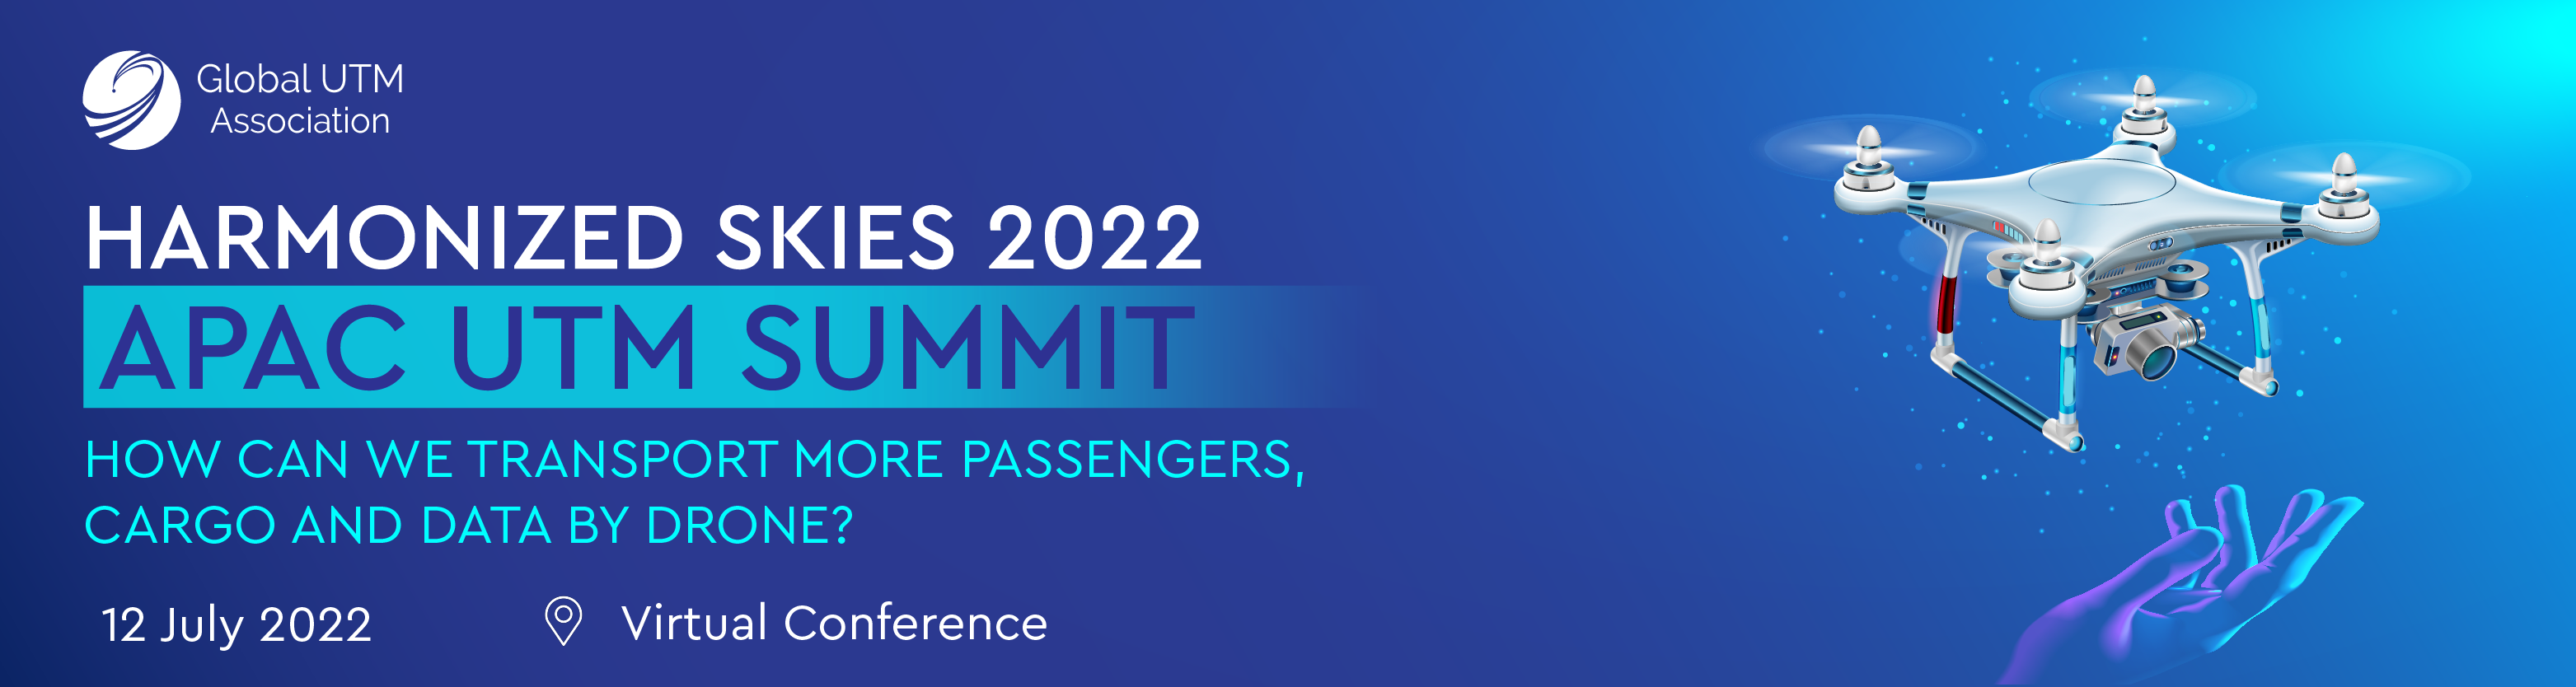 Harmonized Skies 2022 APAC UTM Summit